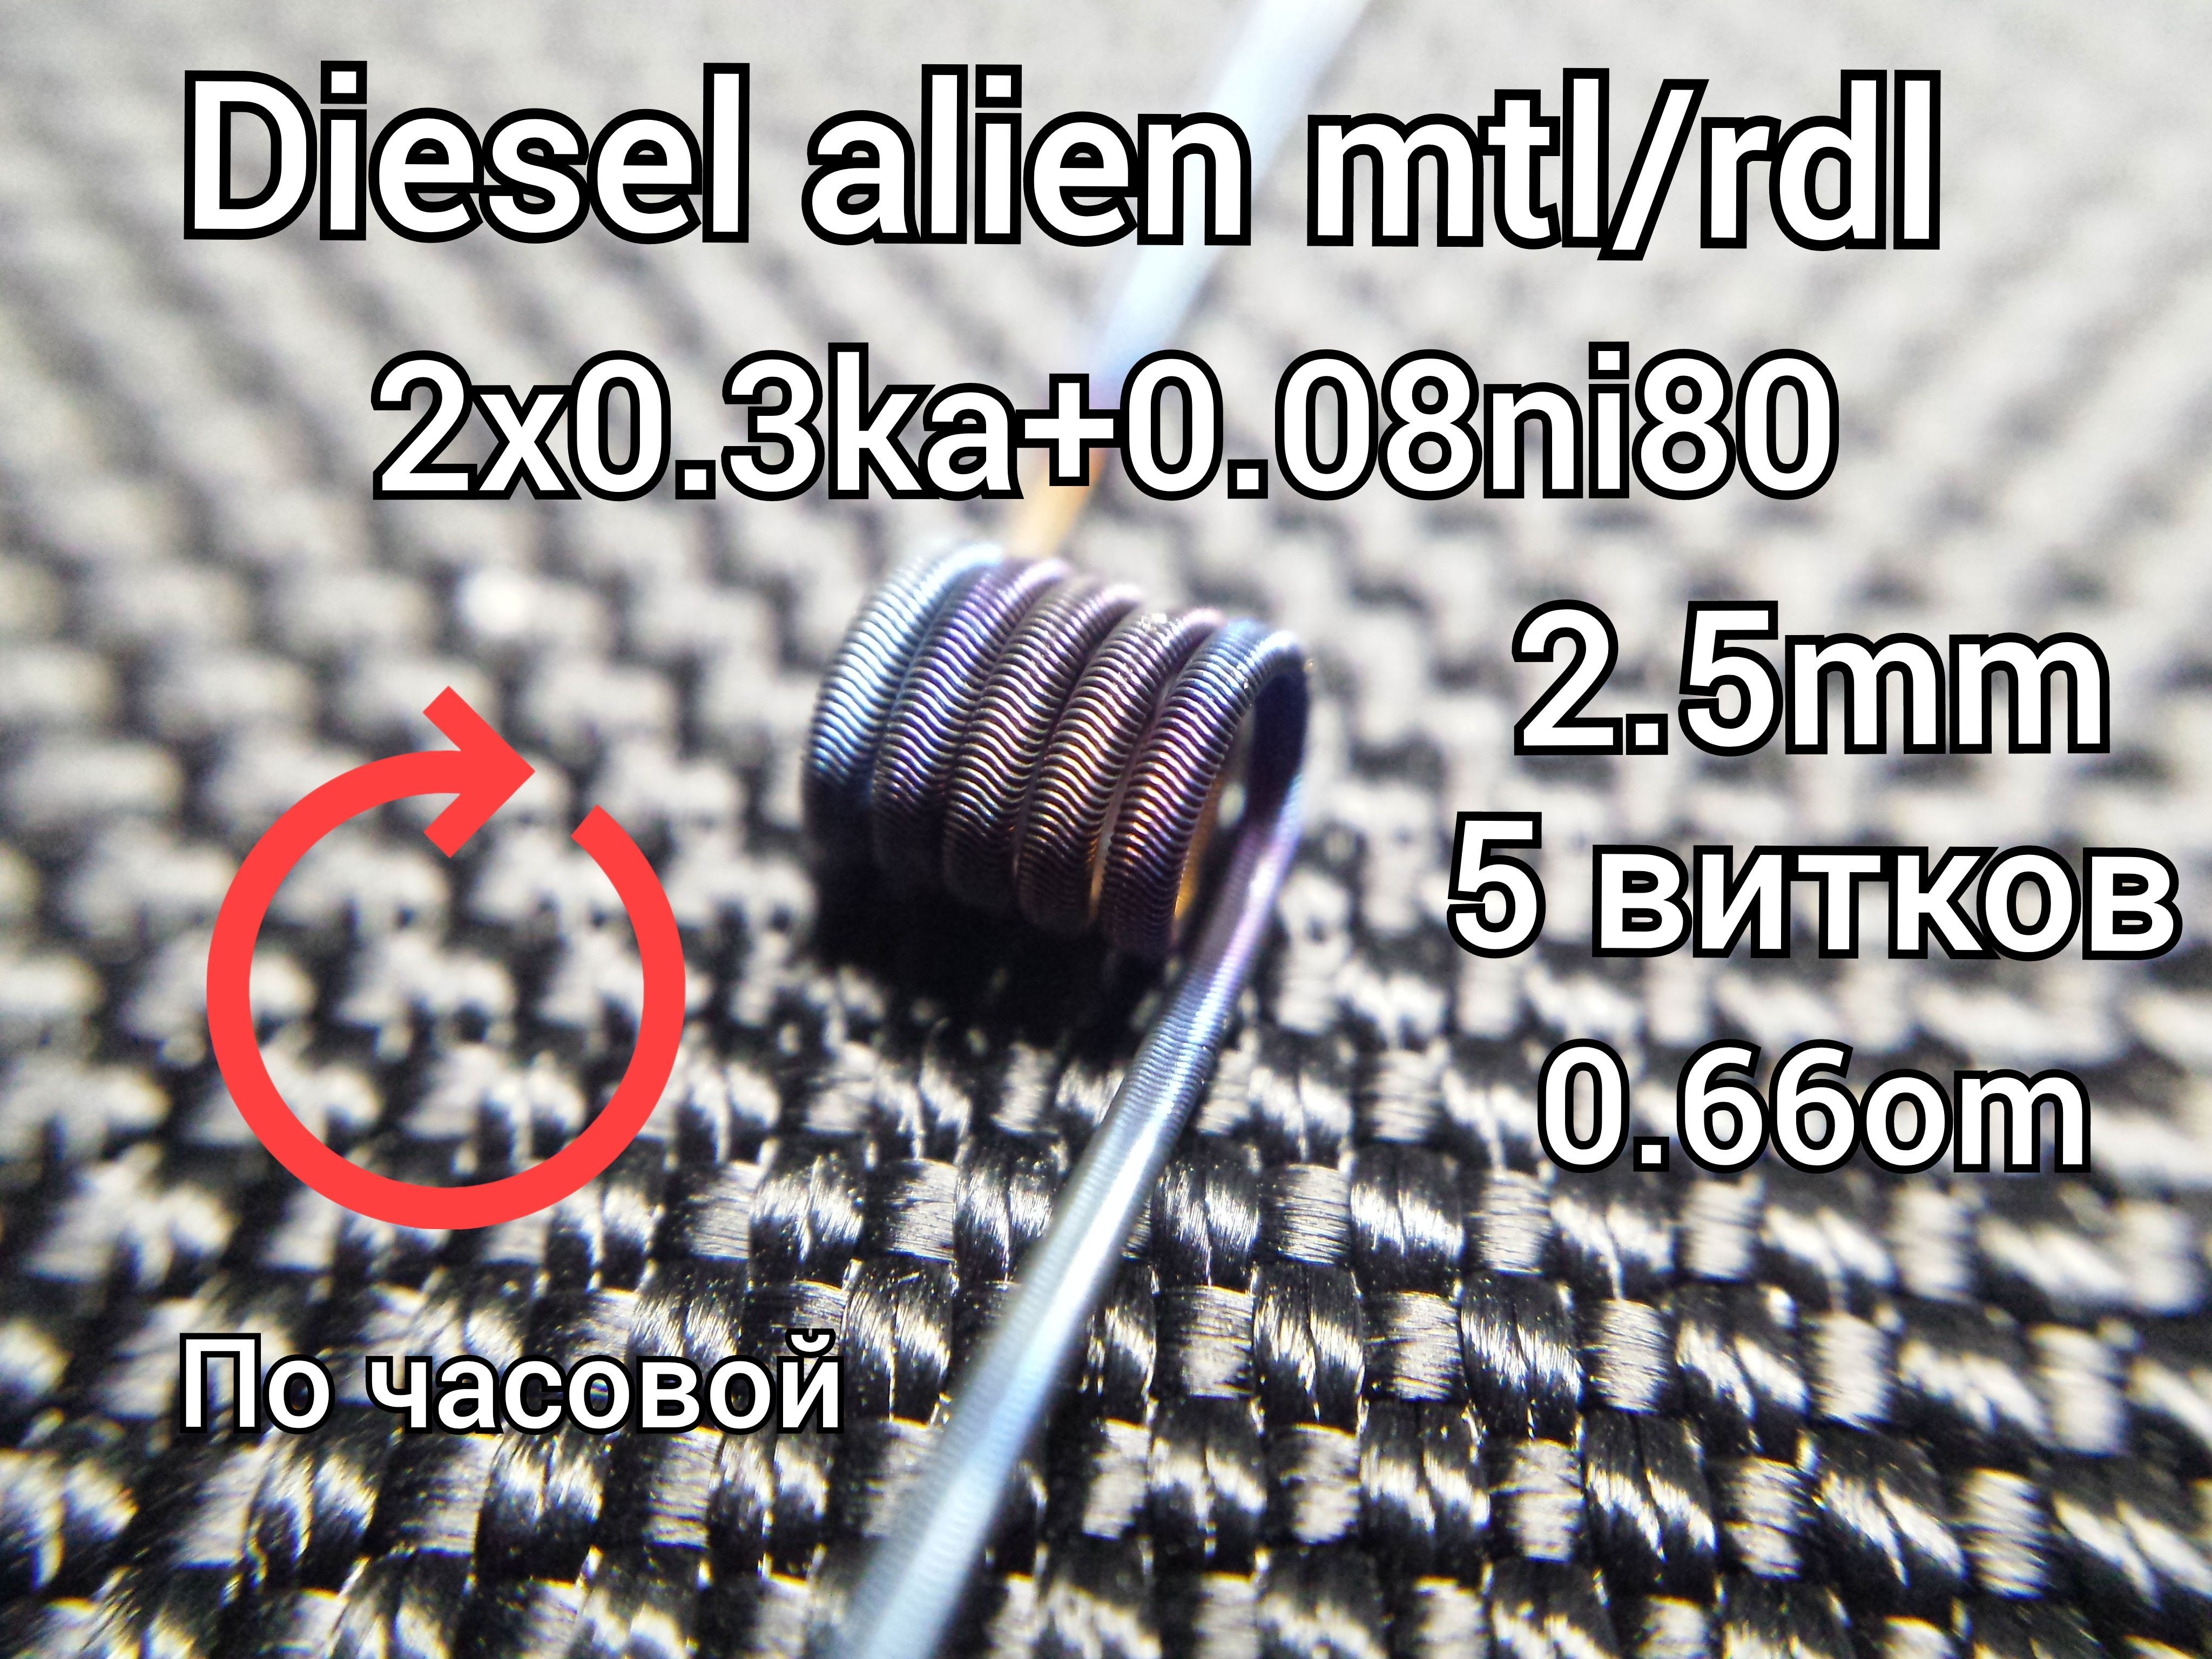 MTL Diesel Alien для чего. Diesel alien